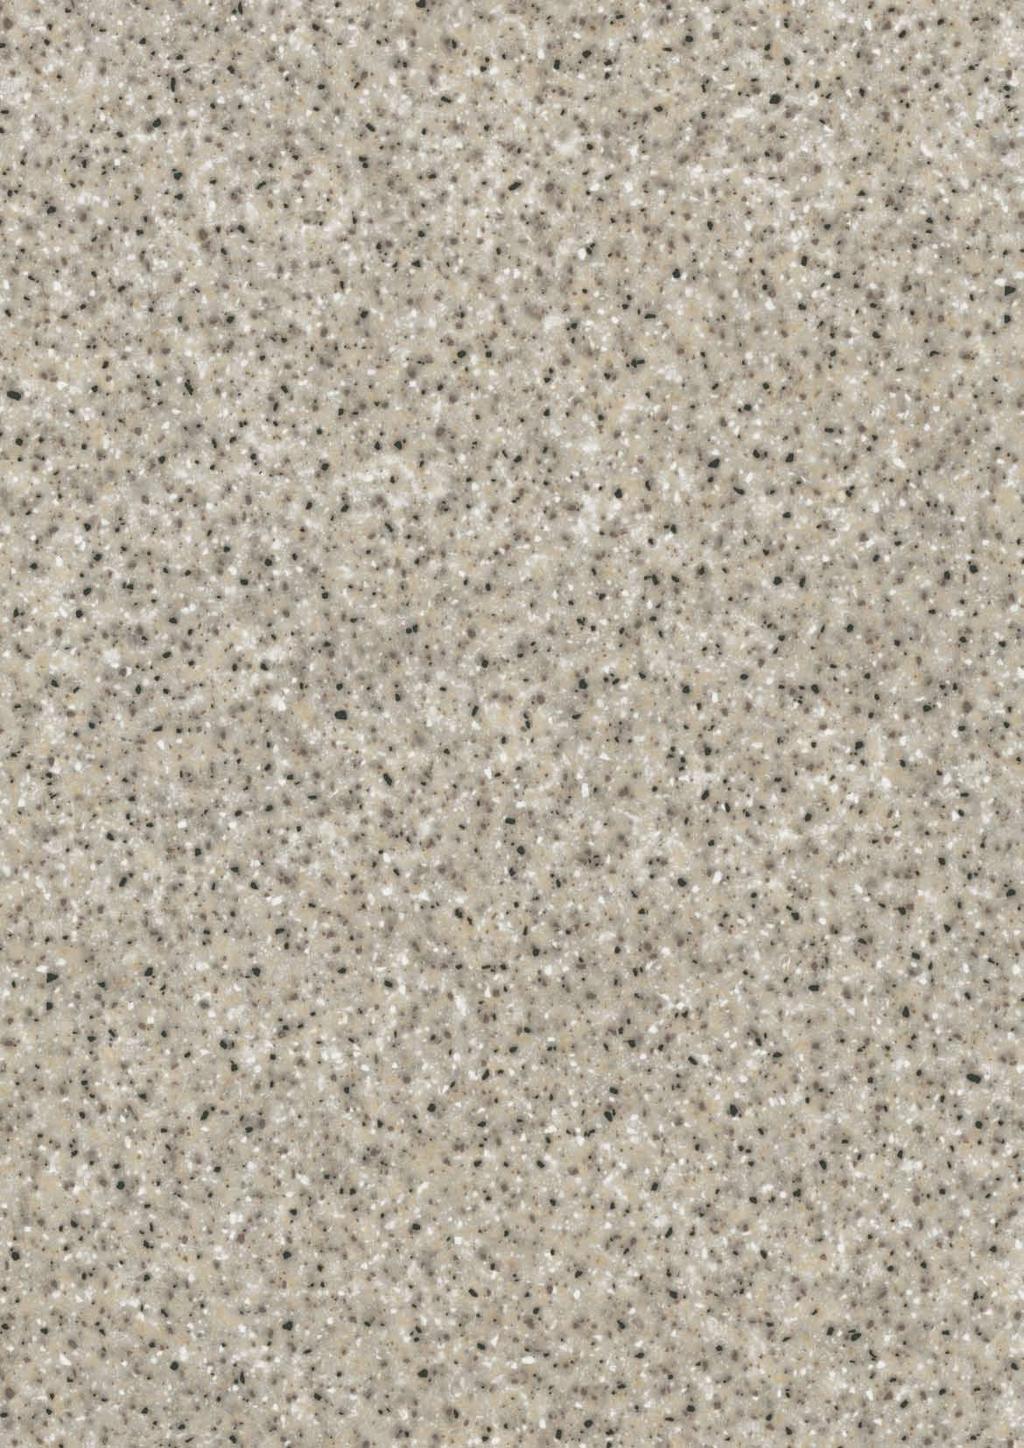 of a sandblasted granite